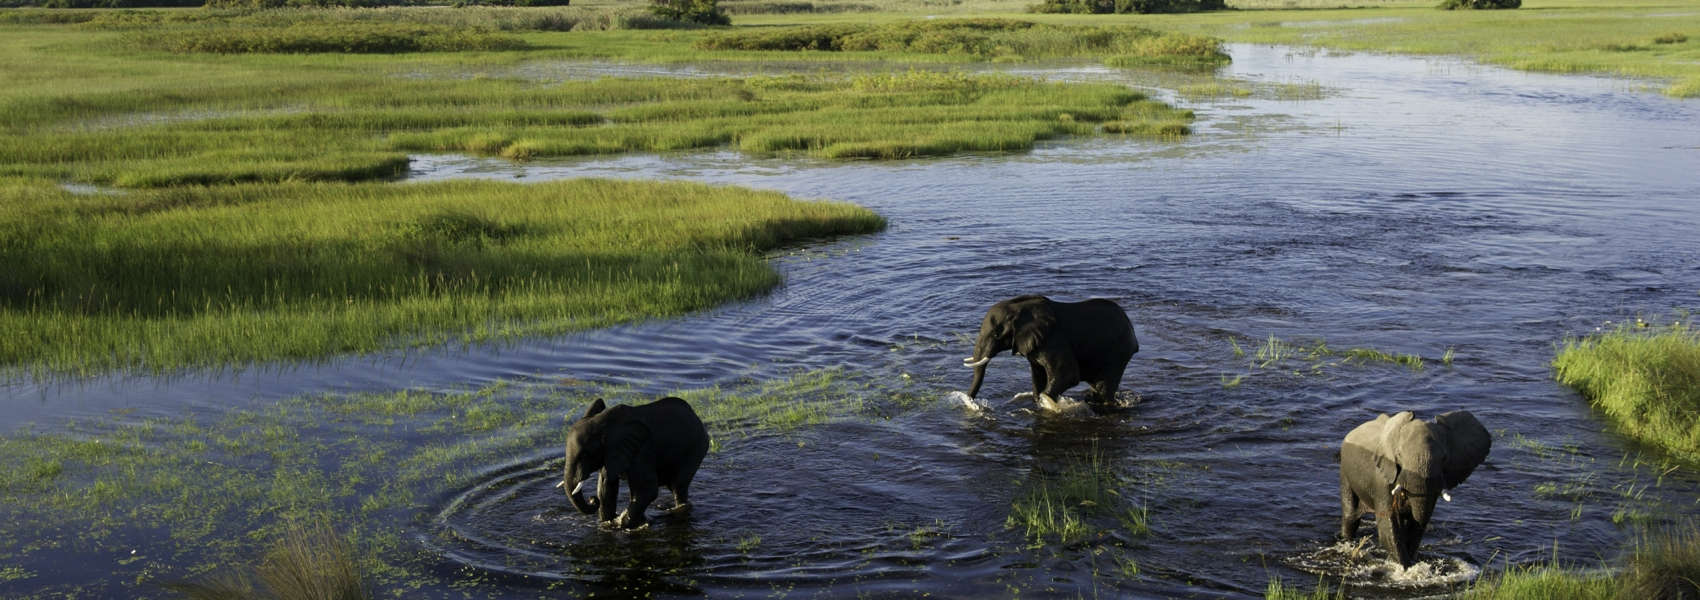 Okavango Delta safaris